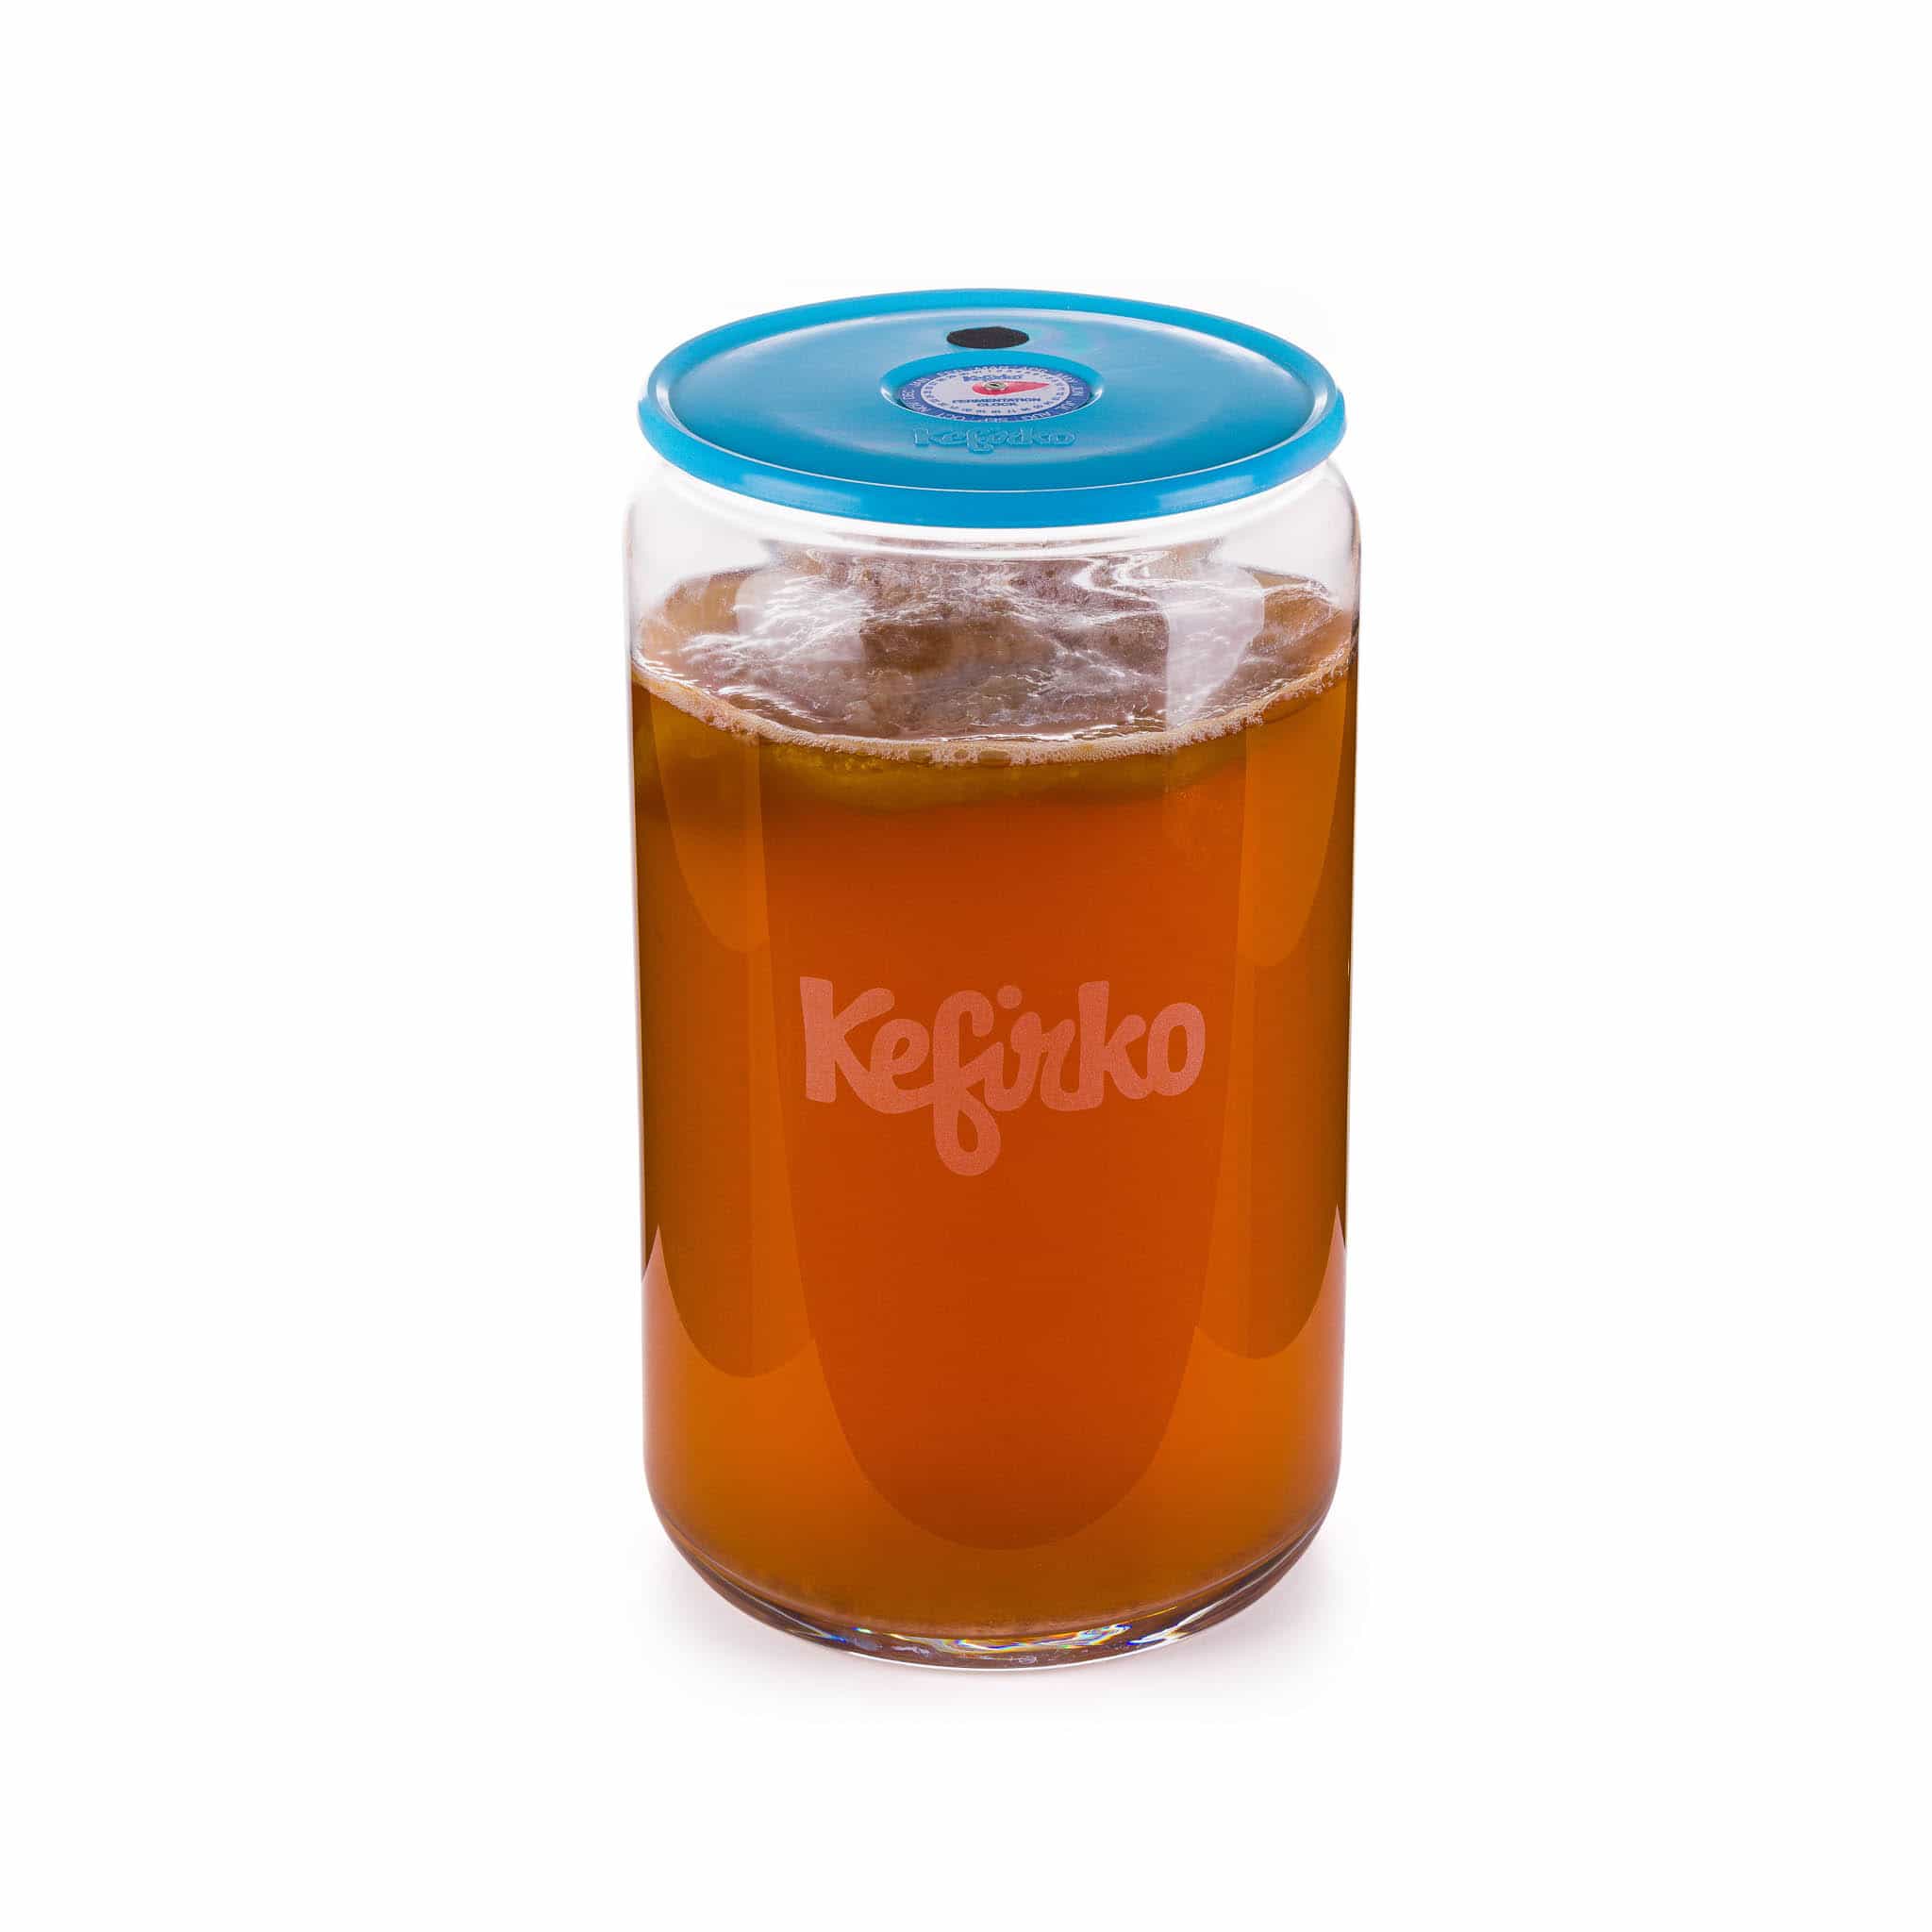 Kerfiko Blue Kombucha Glass Fermenter, 7L